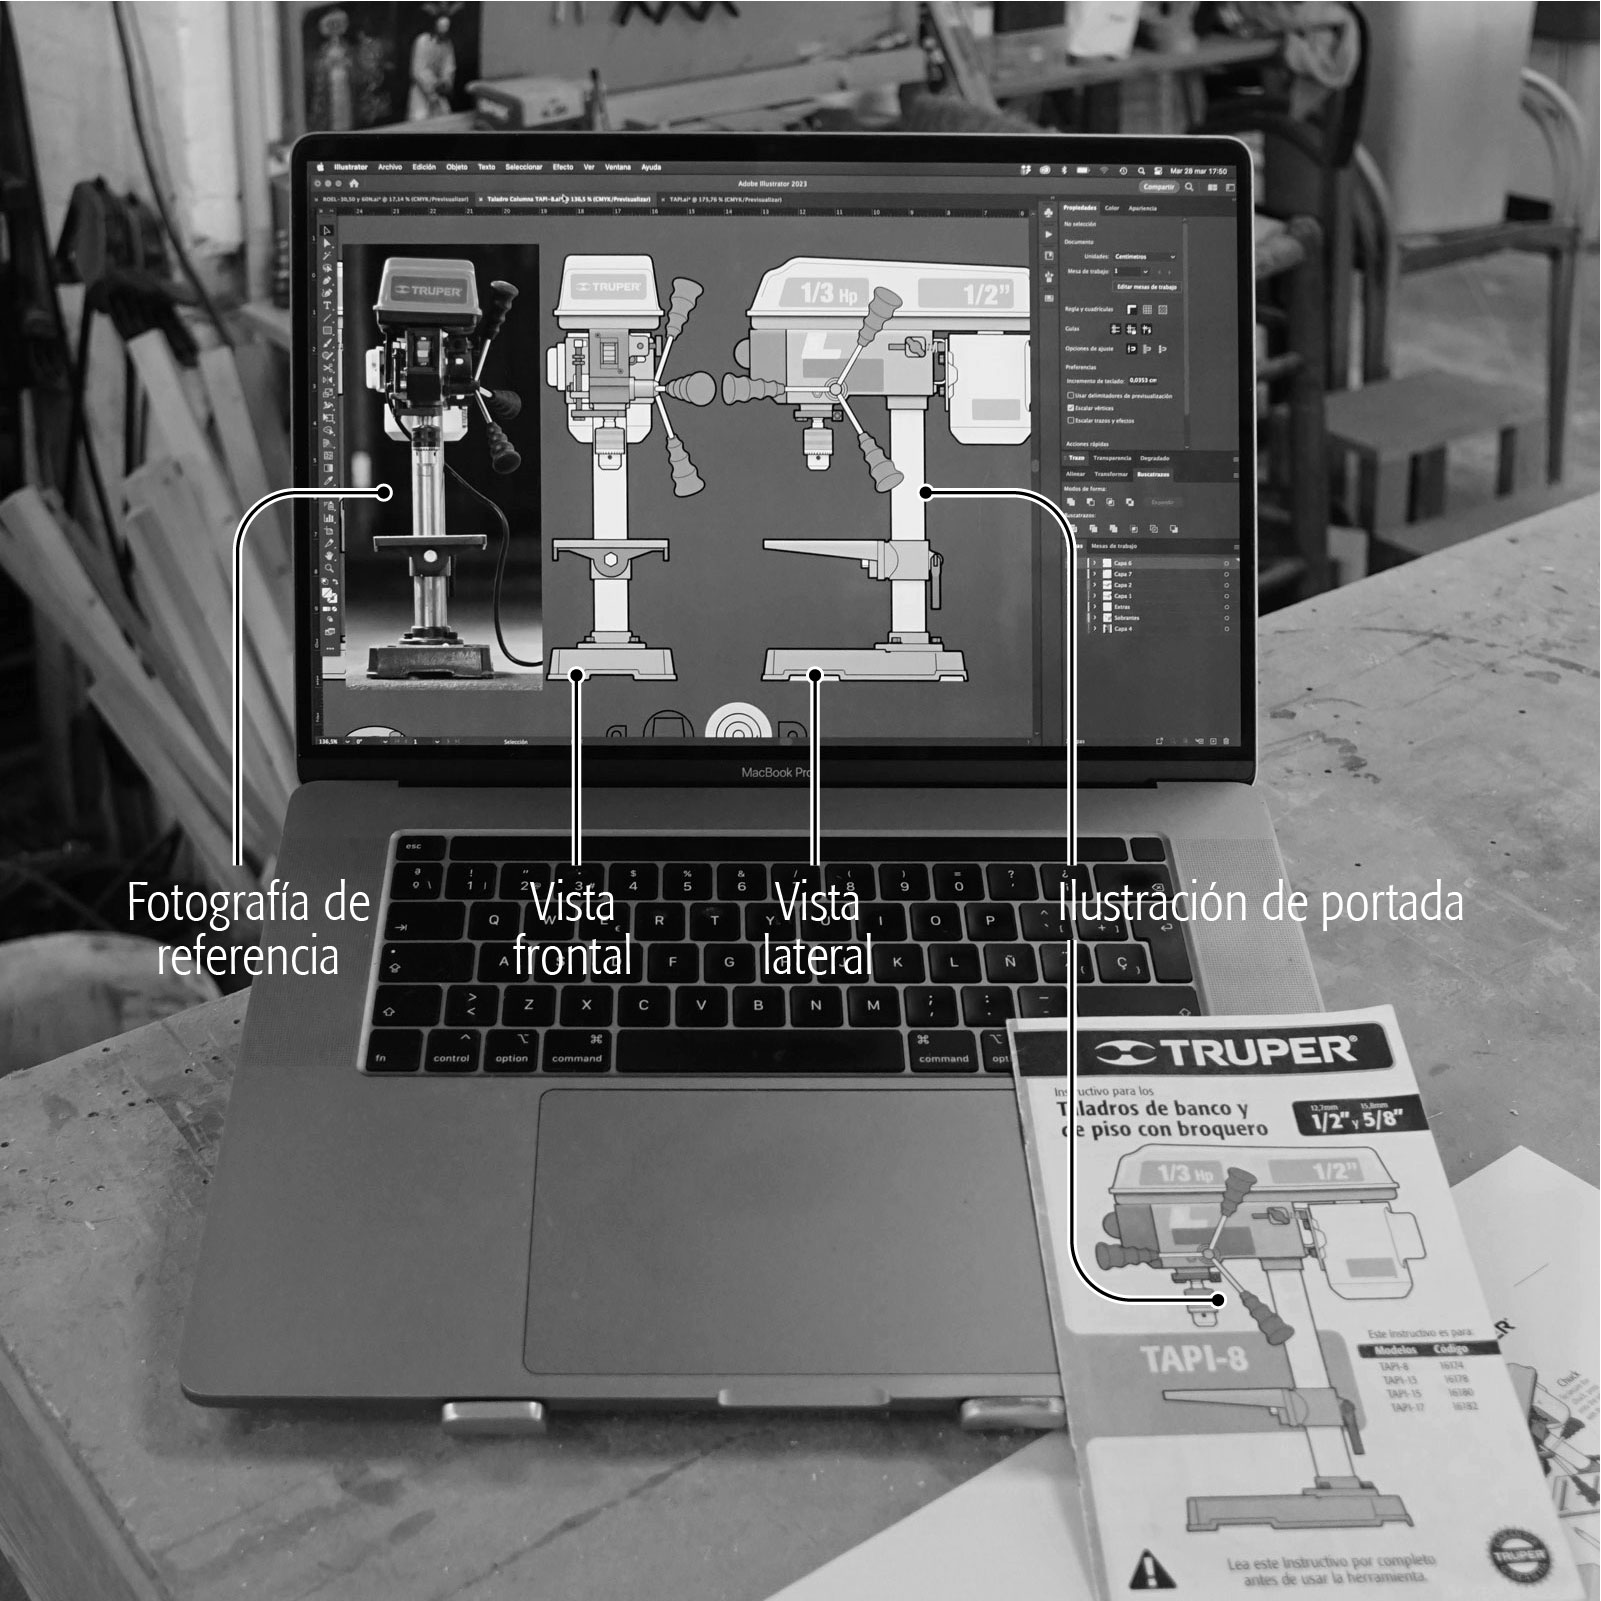 MacBook en un taller de carpintería con un manual de instrucciones Truper sobre el teclado. En la pantalla del laptop se puede ver el archivo abierto de una de las ilustraciones del manual: un taladro de banco hecho en Adobe Illustrator.